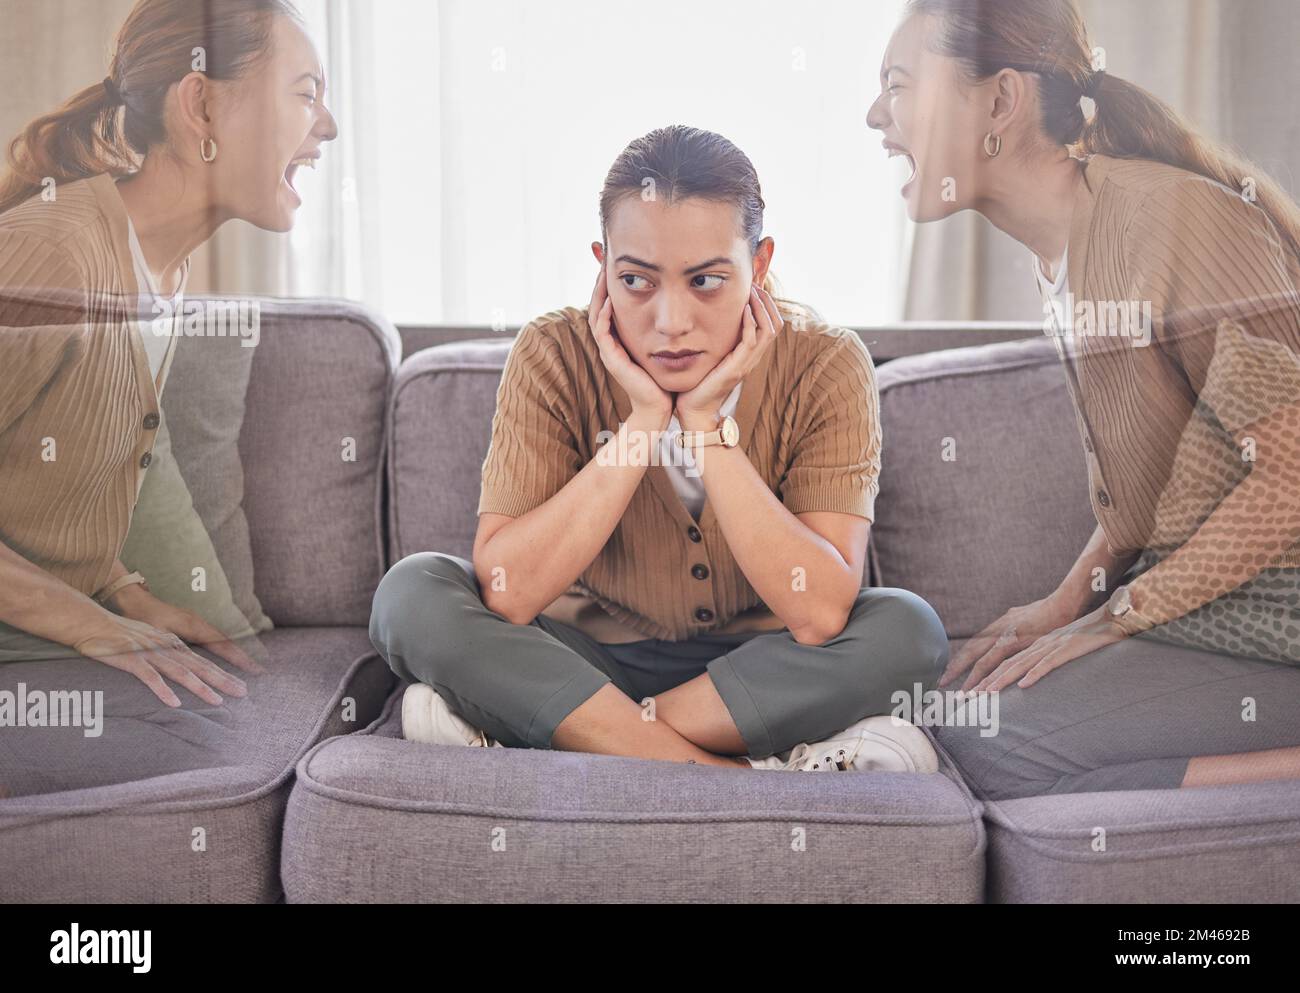 Femme dépressive, collage bipolaire et psychédélique pour la santé mentale à la maison avec la dépression, l'anxiété et la peur de la voix forte sur le canapé. Fou ou peur Banque D'Images